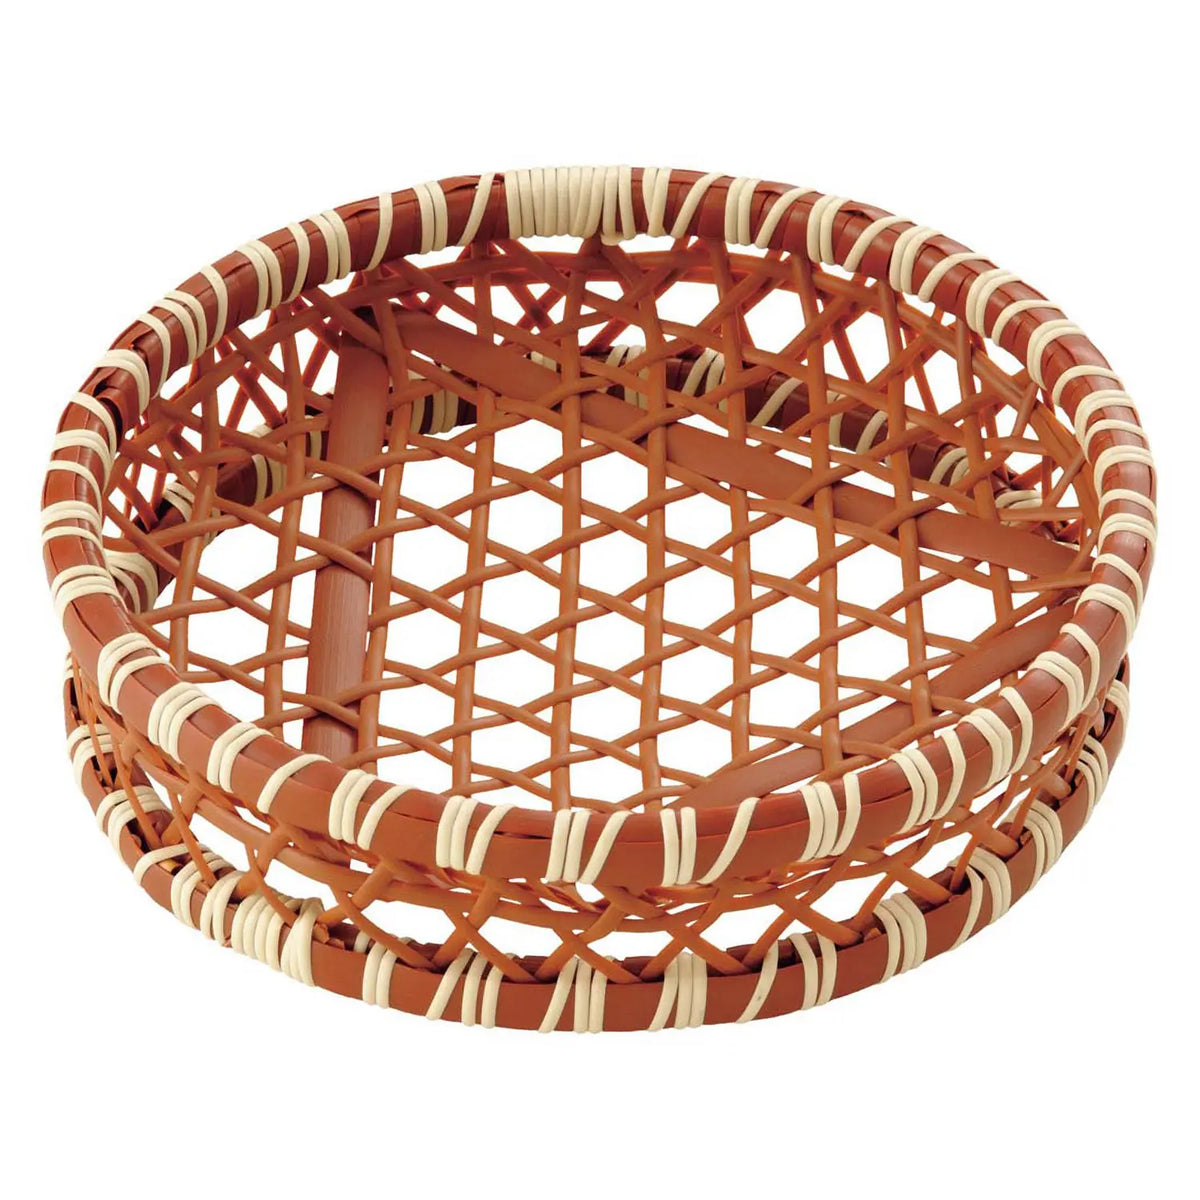 MANYO Polypropylene Serving Basket Hexagonal Mesh